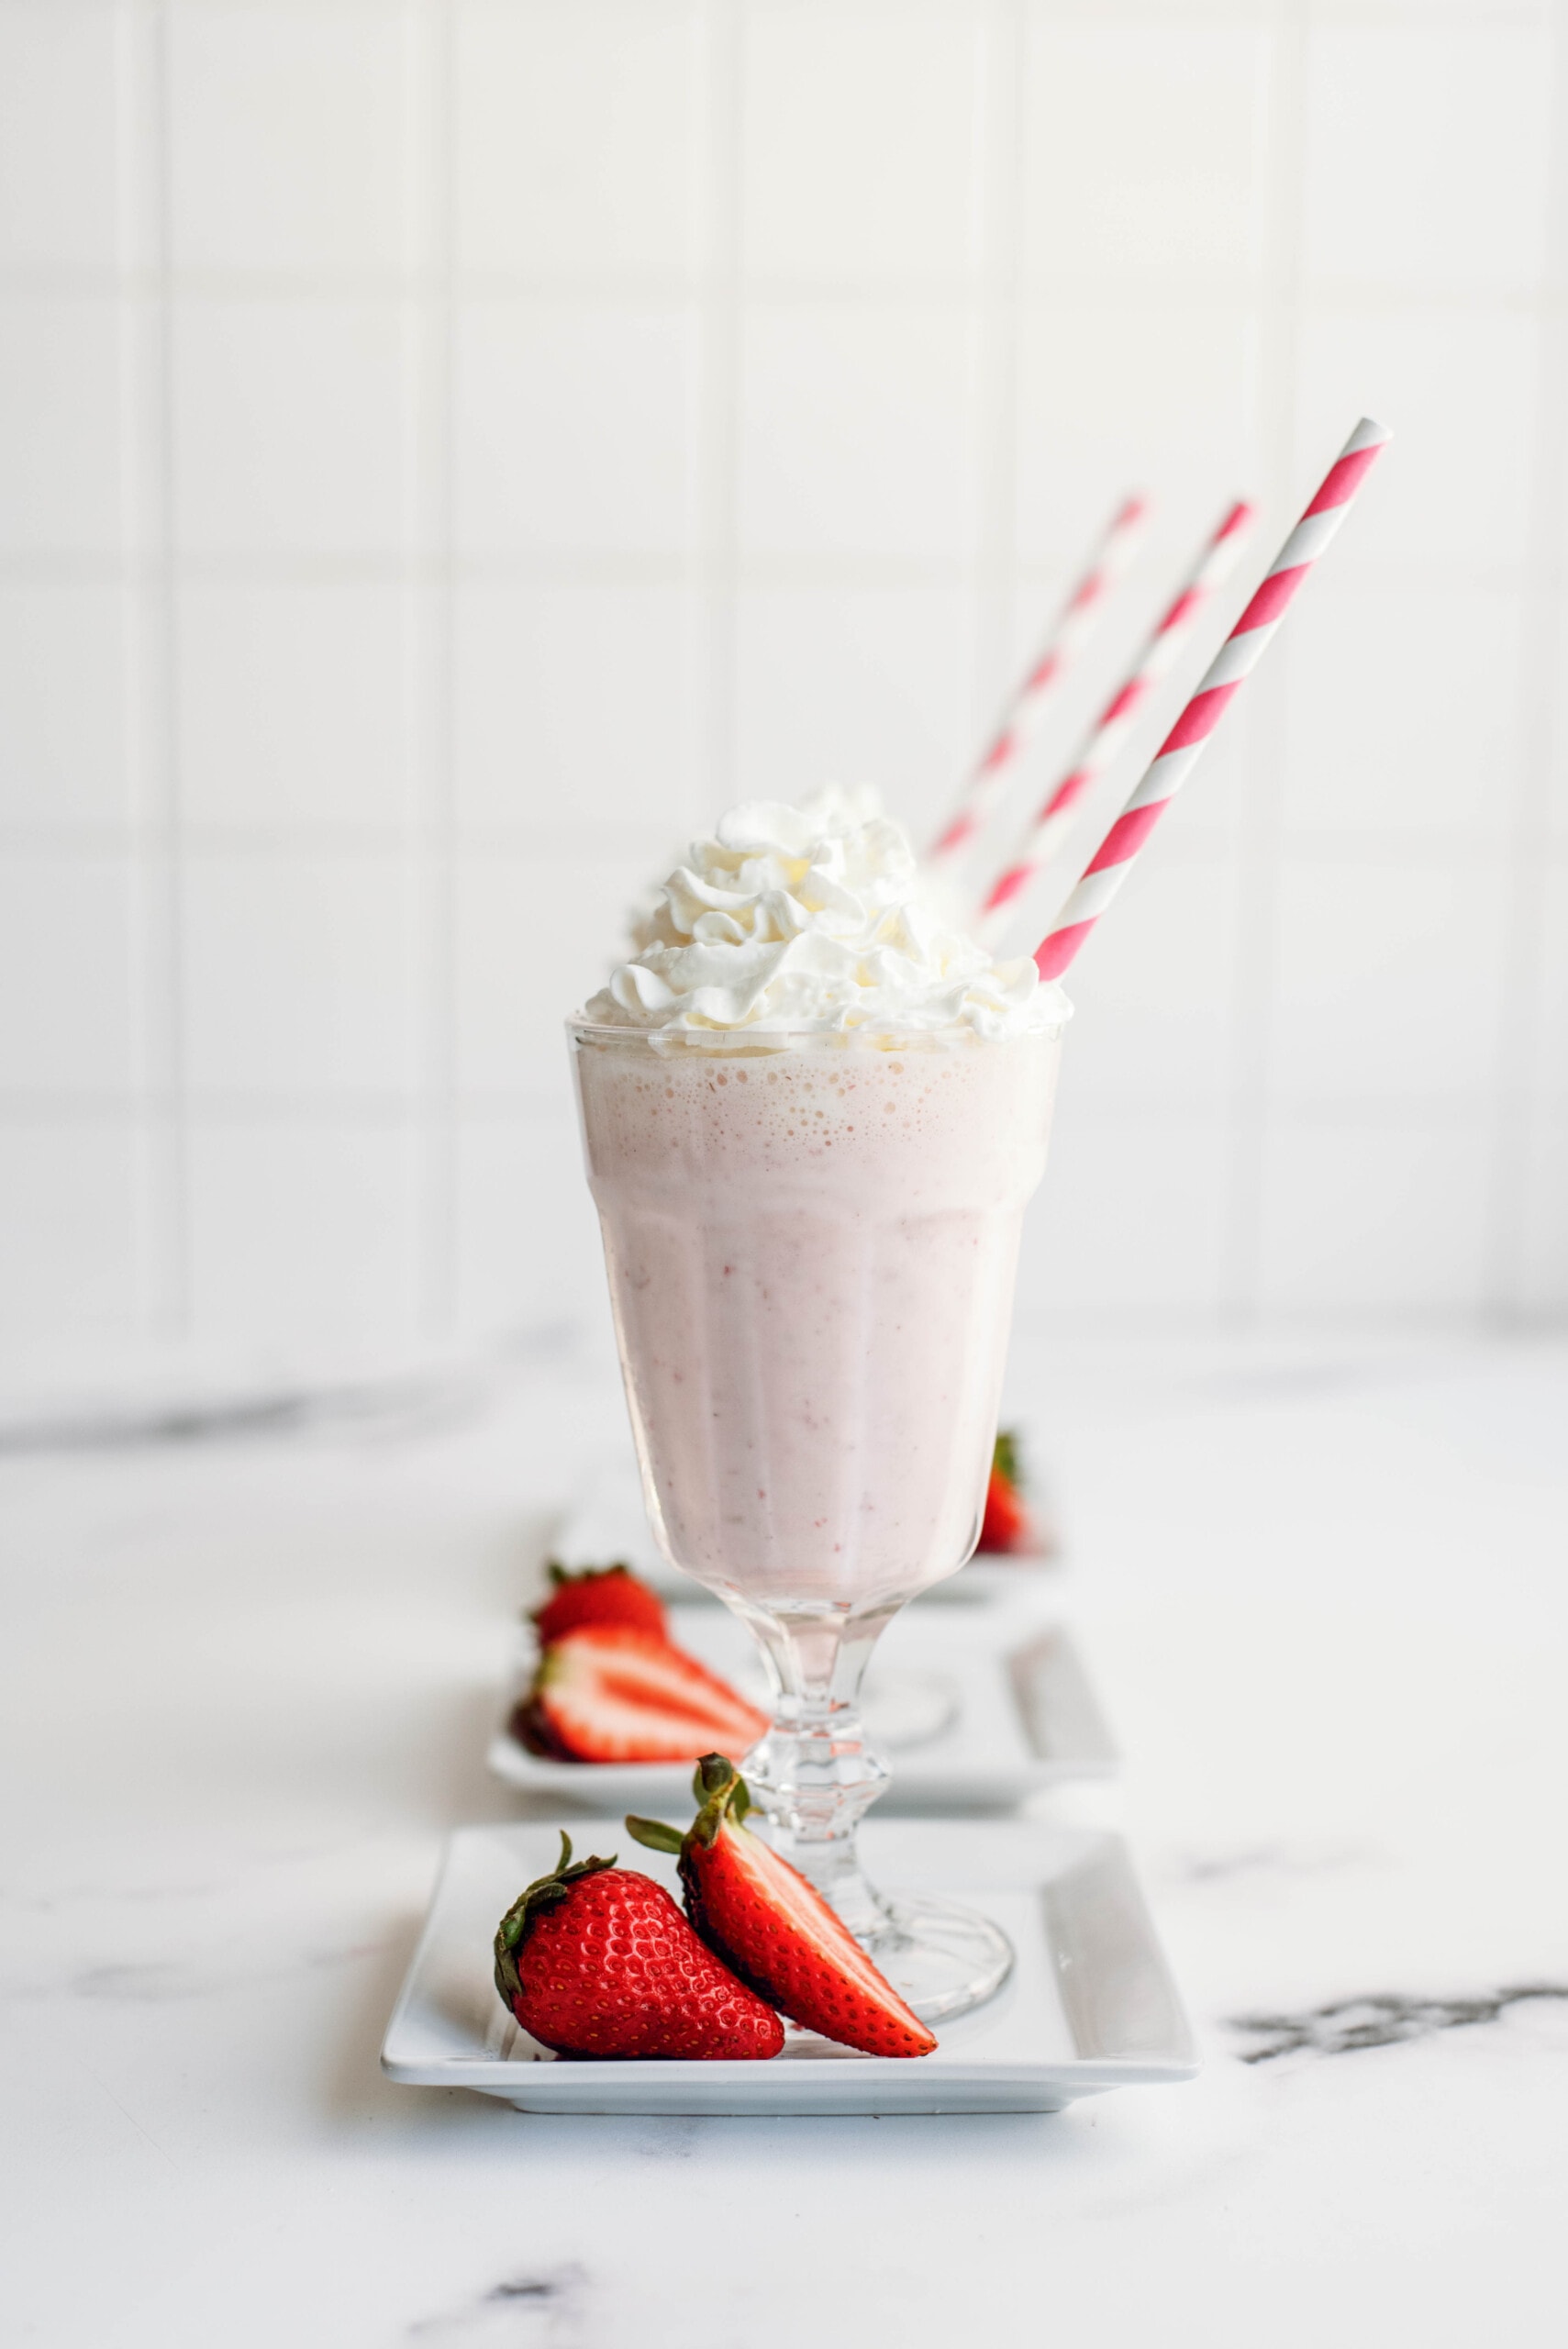 strawberry-shake-7330